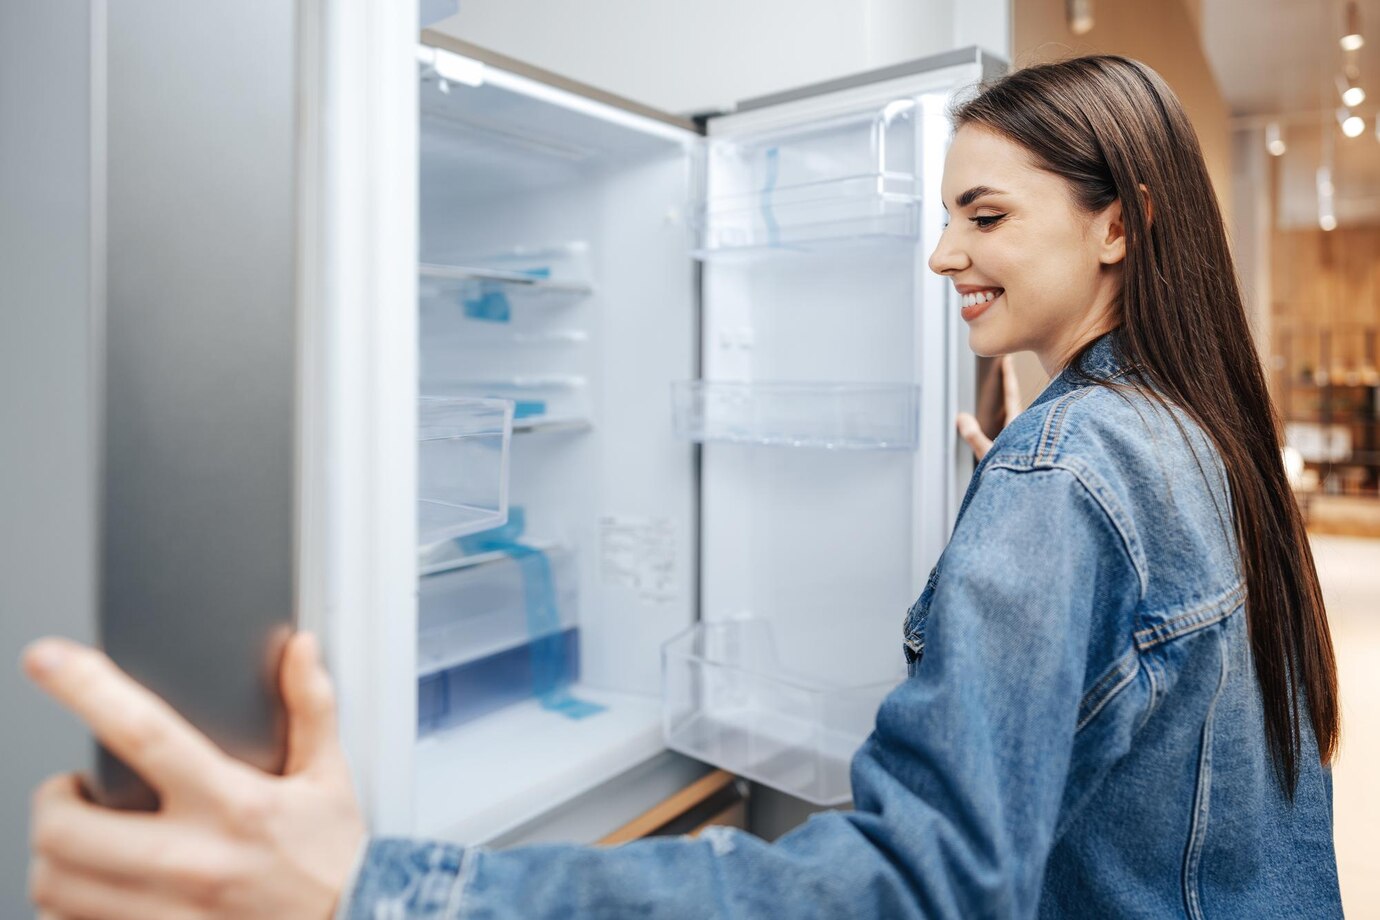 ขนาดตู้เย็นเลือกแบบไหนดี แนะนำวิธีเลือกที่ตอบโจทย์การใช้งาน